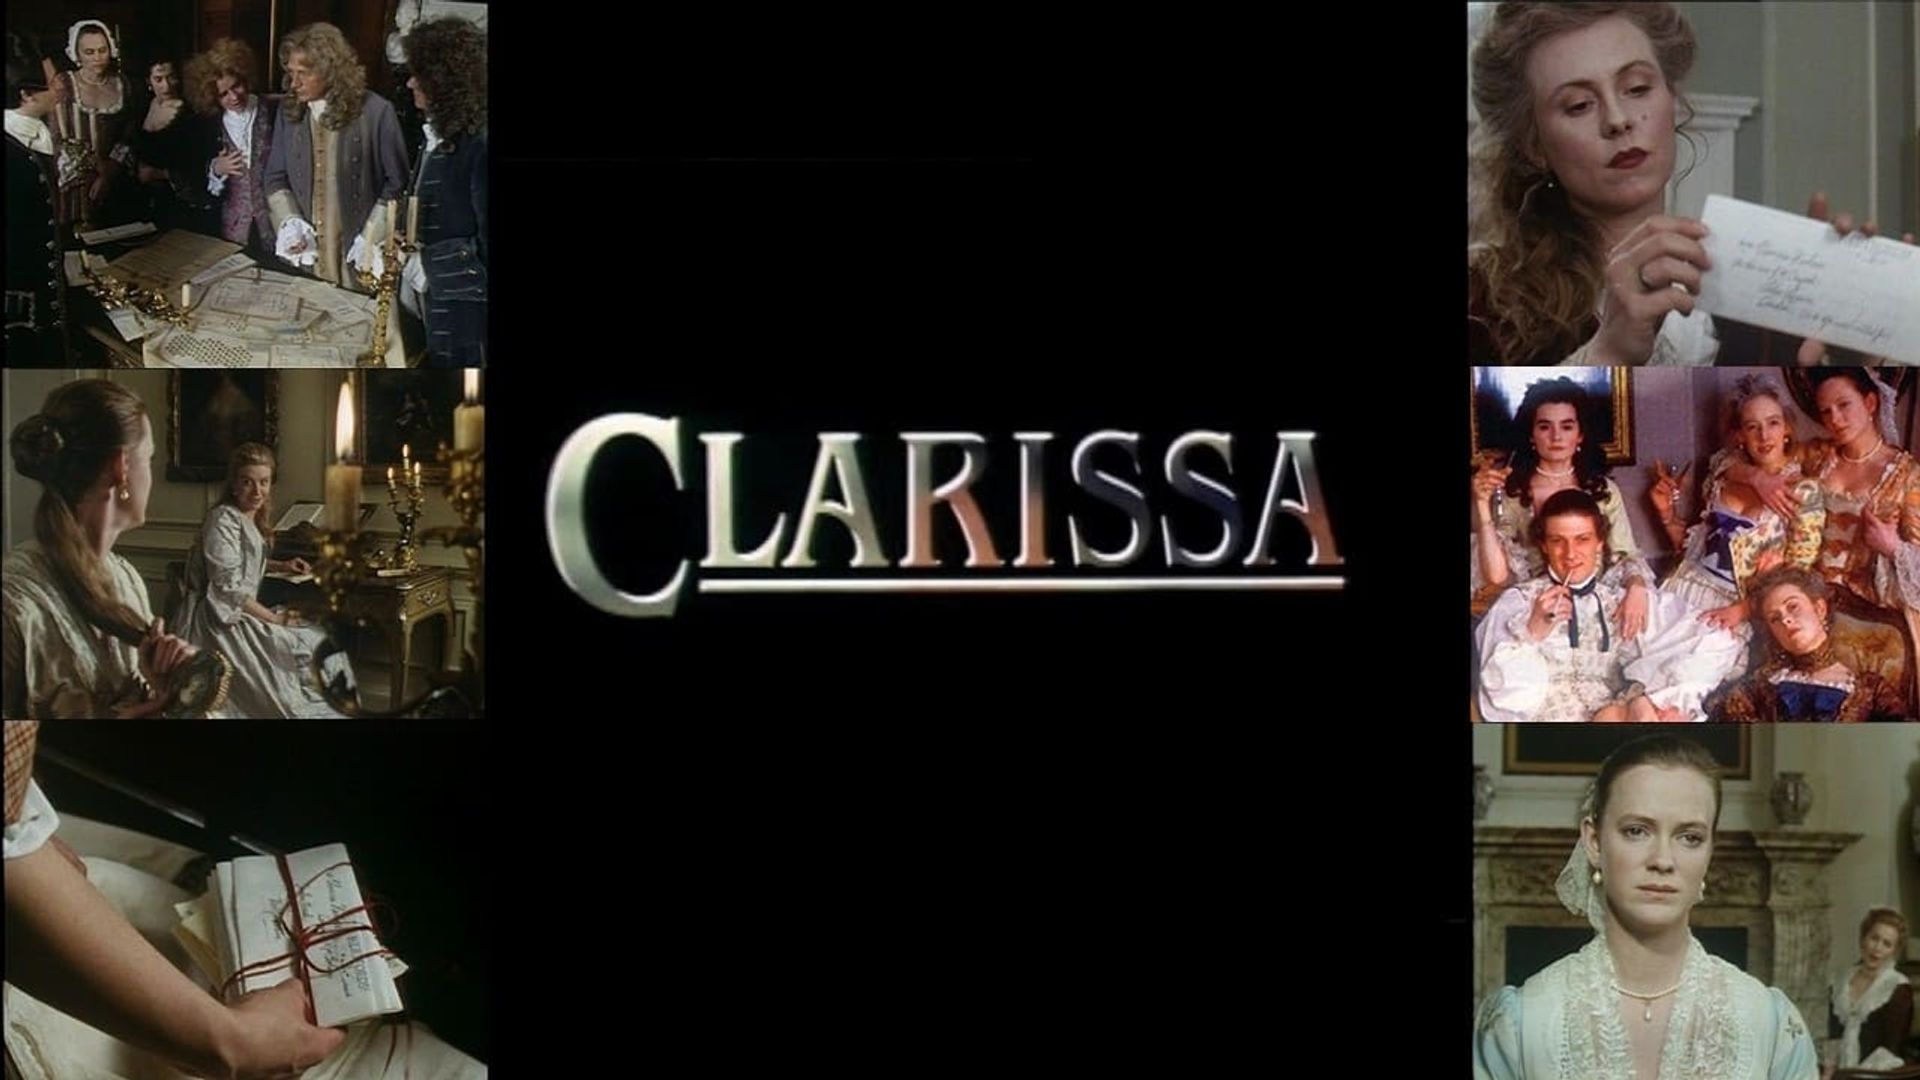 Clarissa background